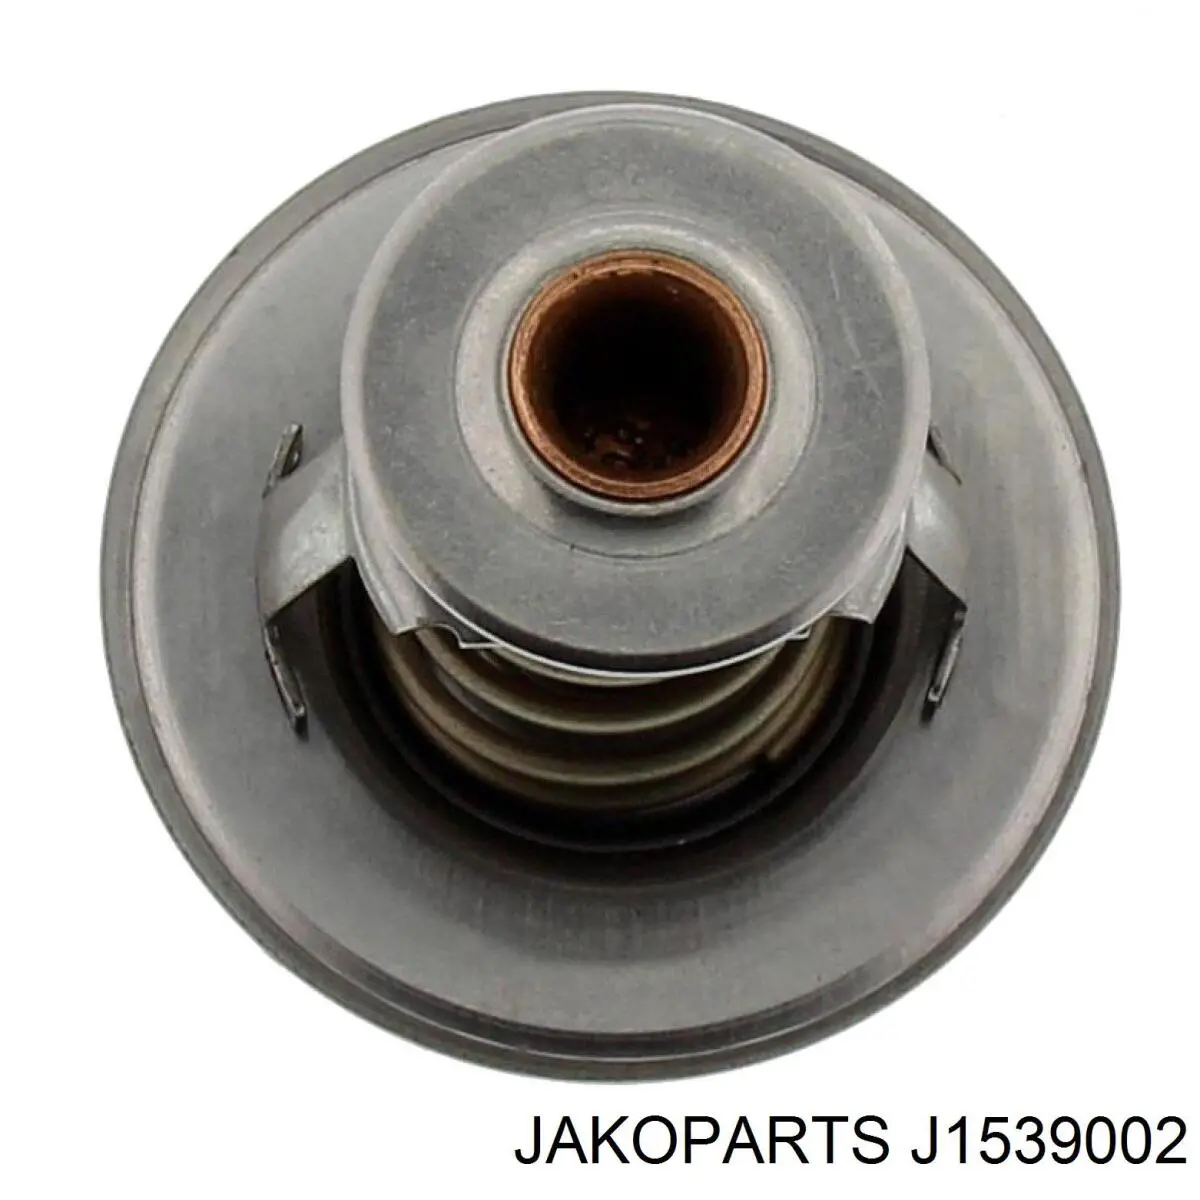 J1539002 Jakoparts termostato